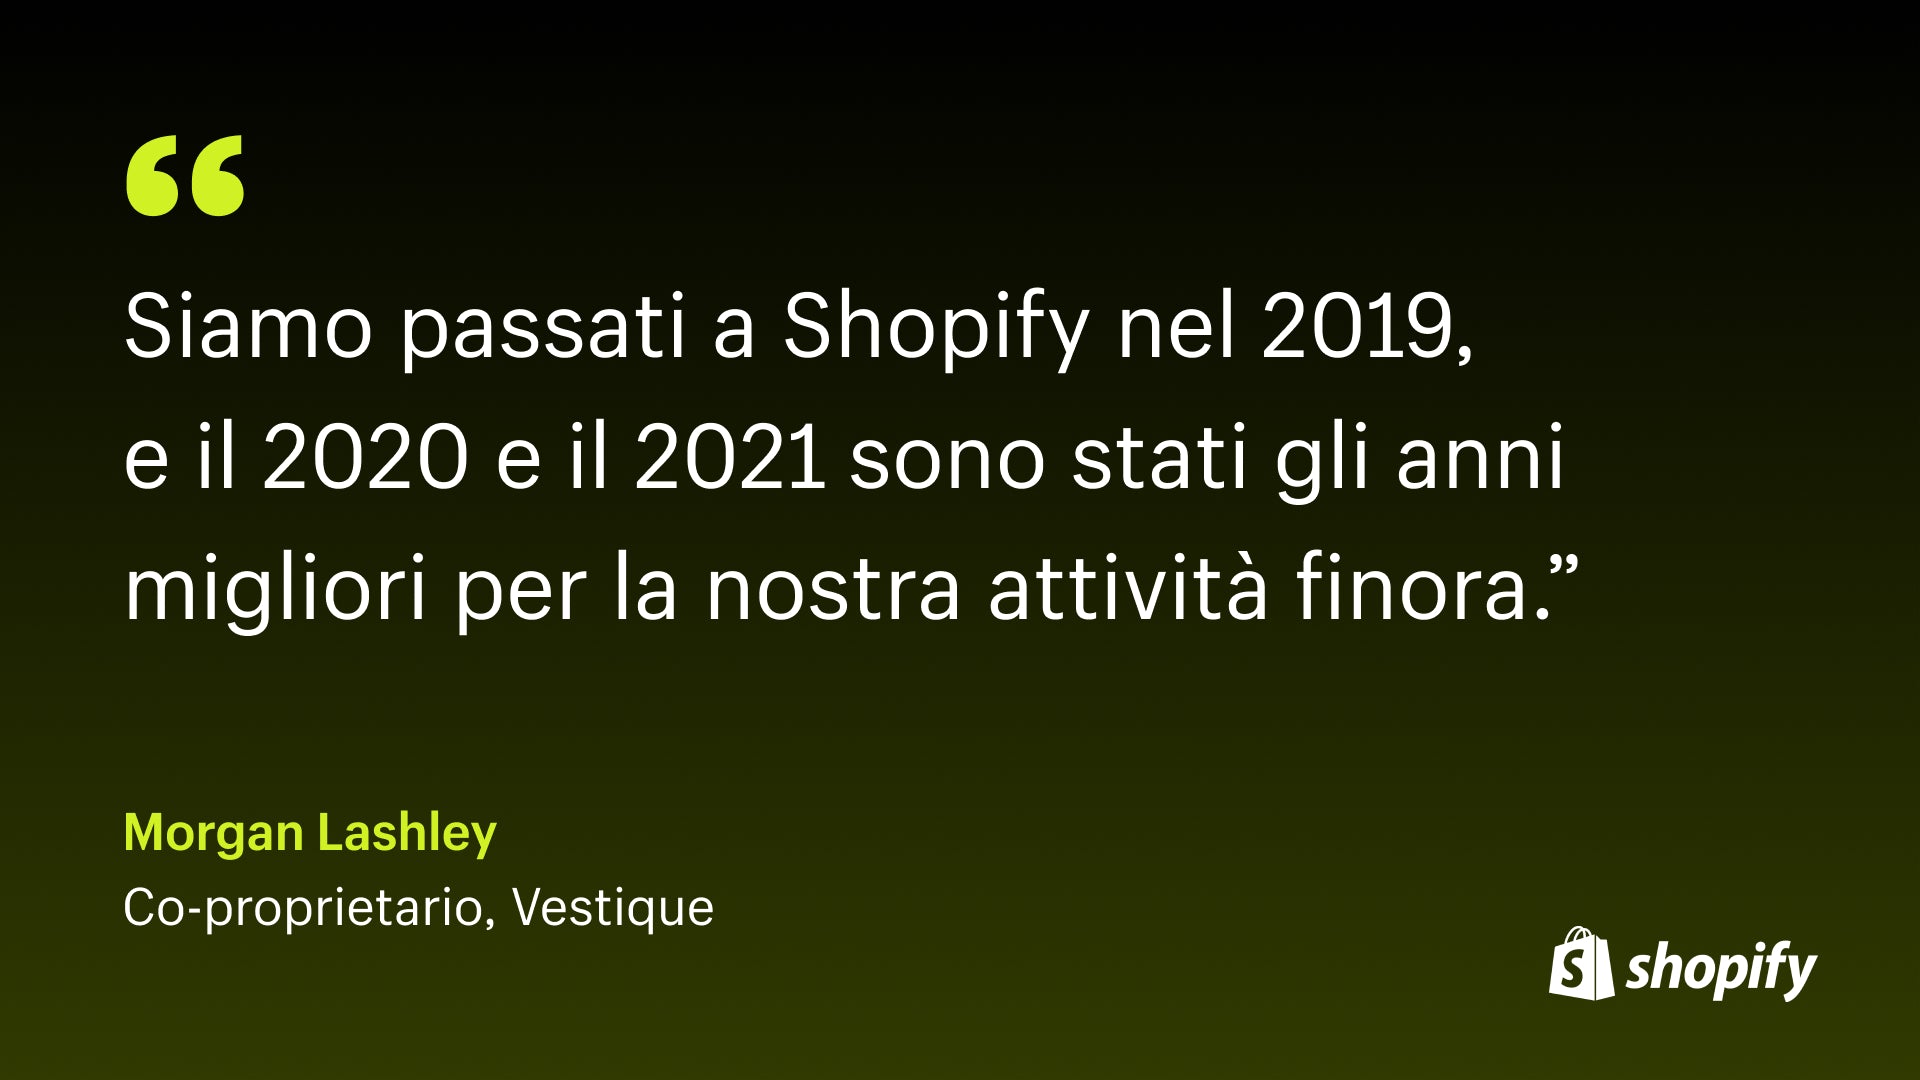 Immagine della citazione di Morgan Lashley, comproprietario di Vestique, che dice: "Siamo passati a Shopify nel 2019 e il 2020 e il 2021 sono stati finora gli anni migliori per la nostra attività".